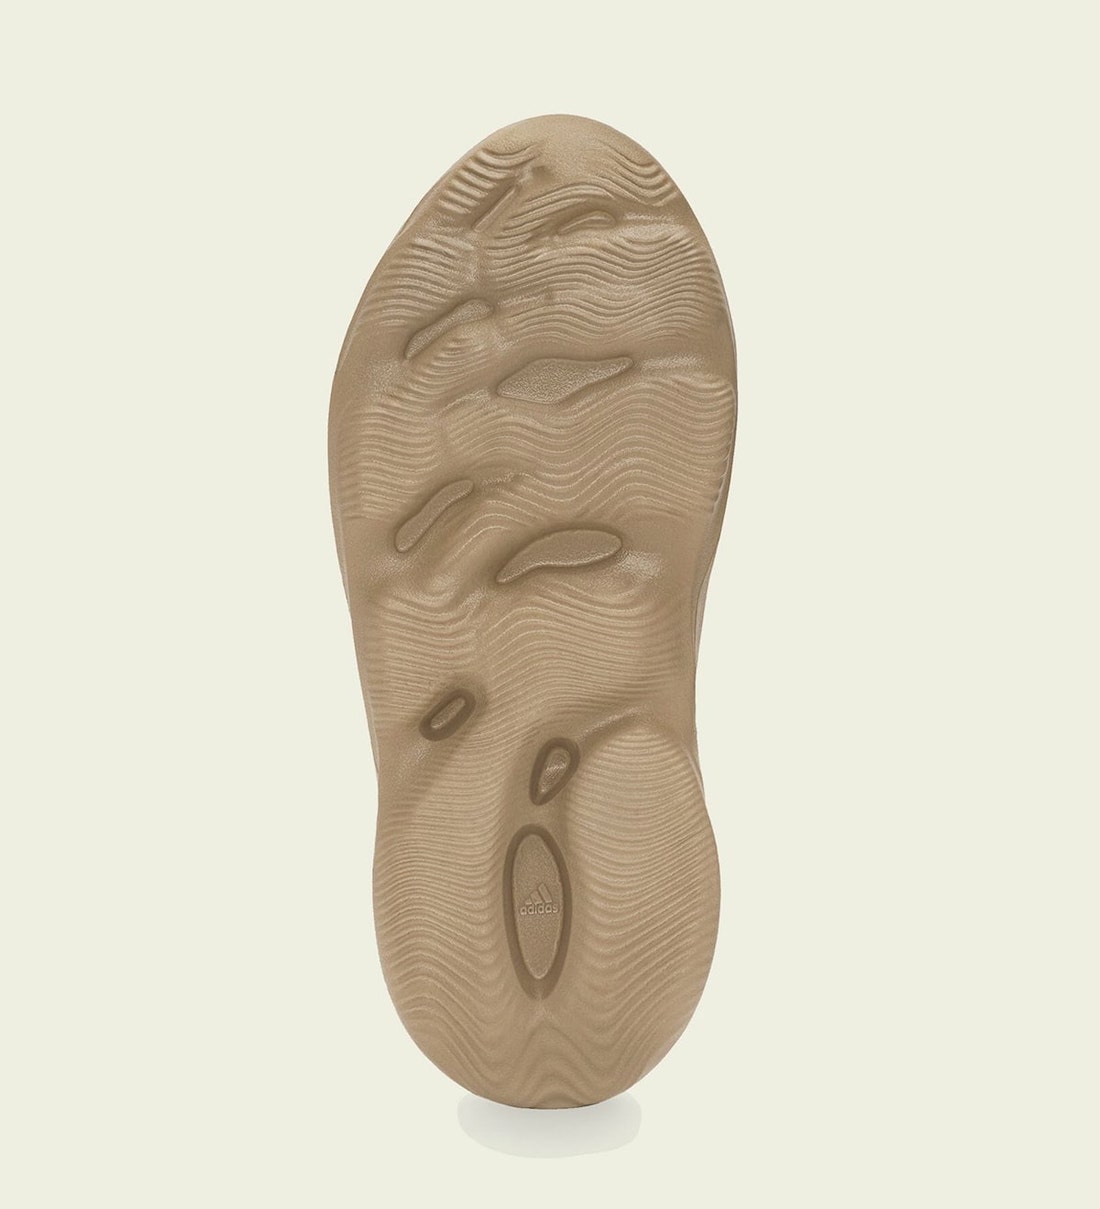 adidas Yeezy Foam Runner Ochre GW3354 Release Info Price